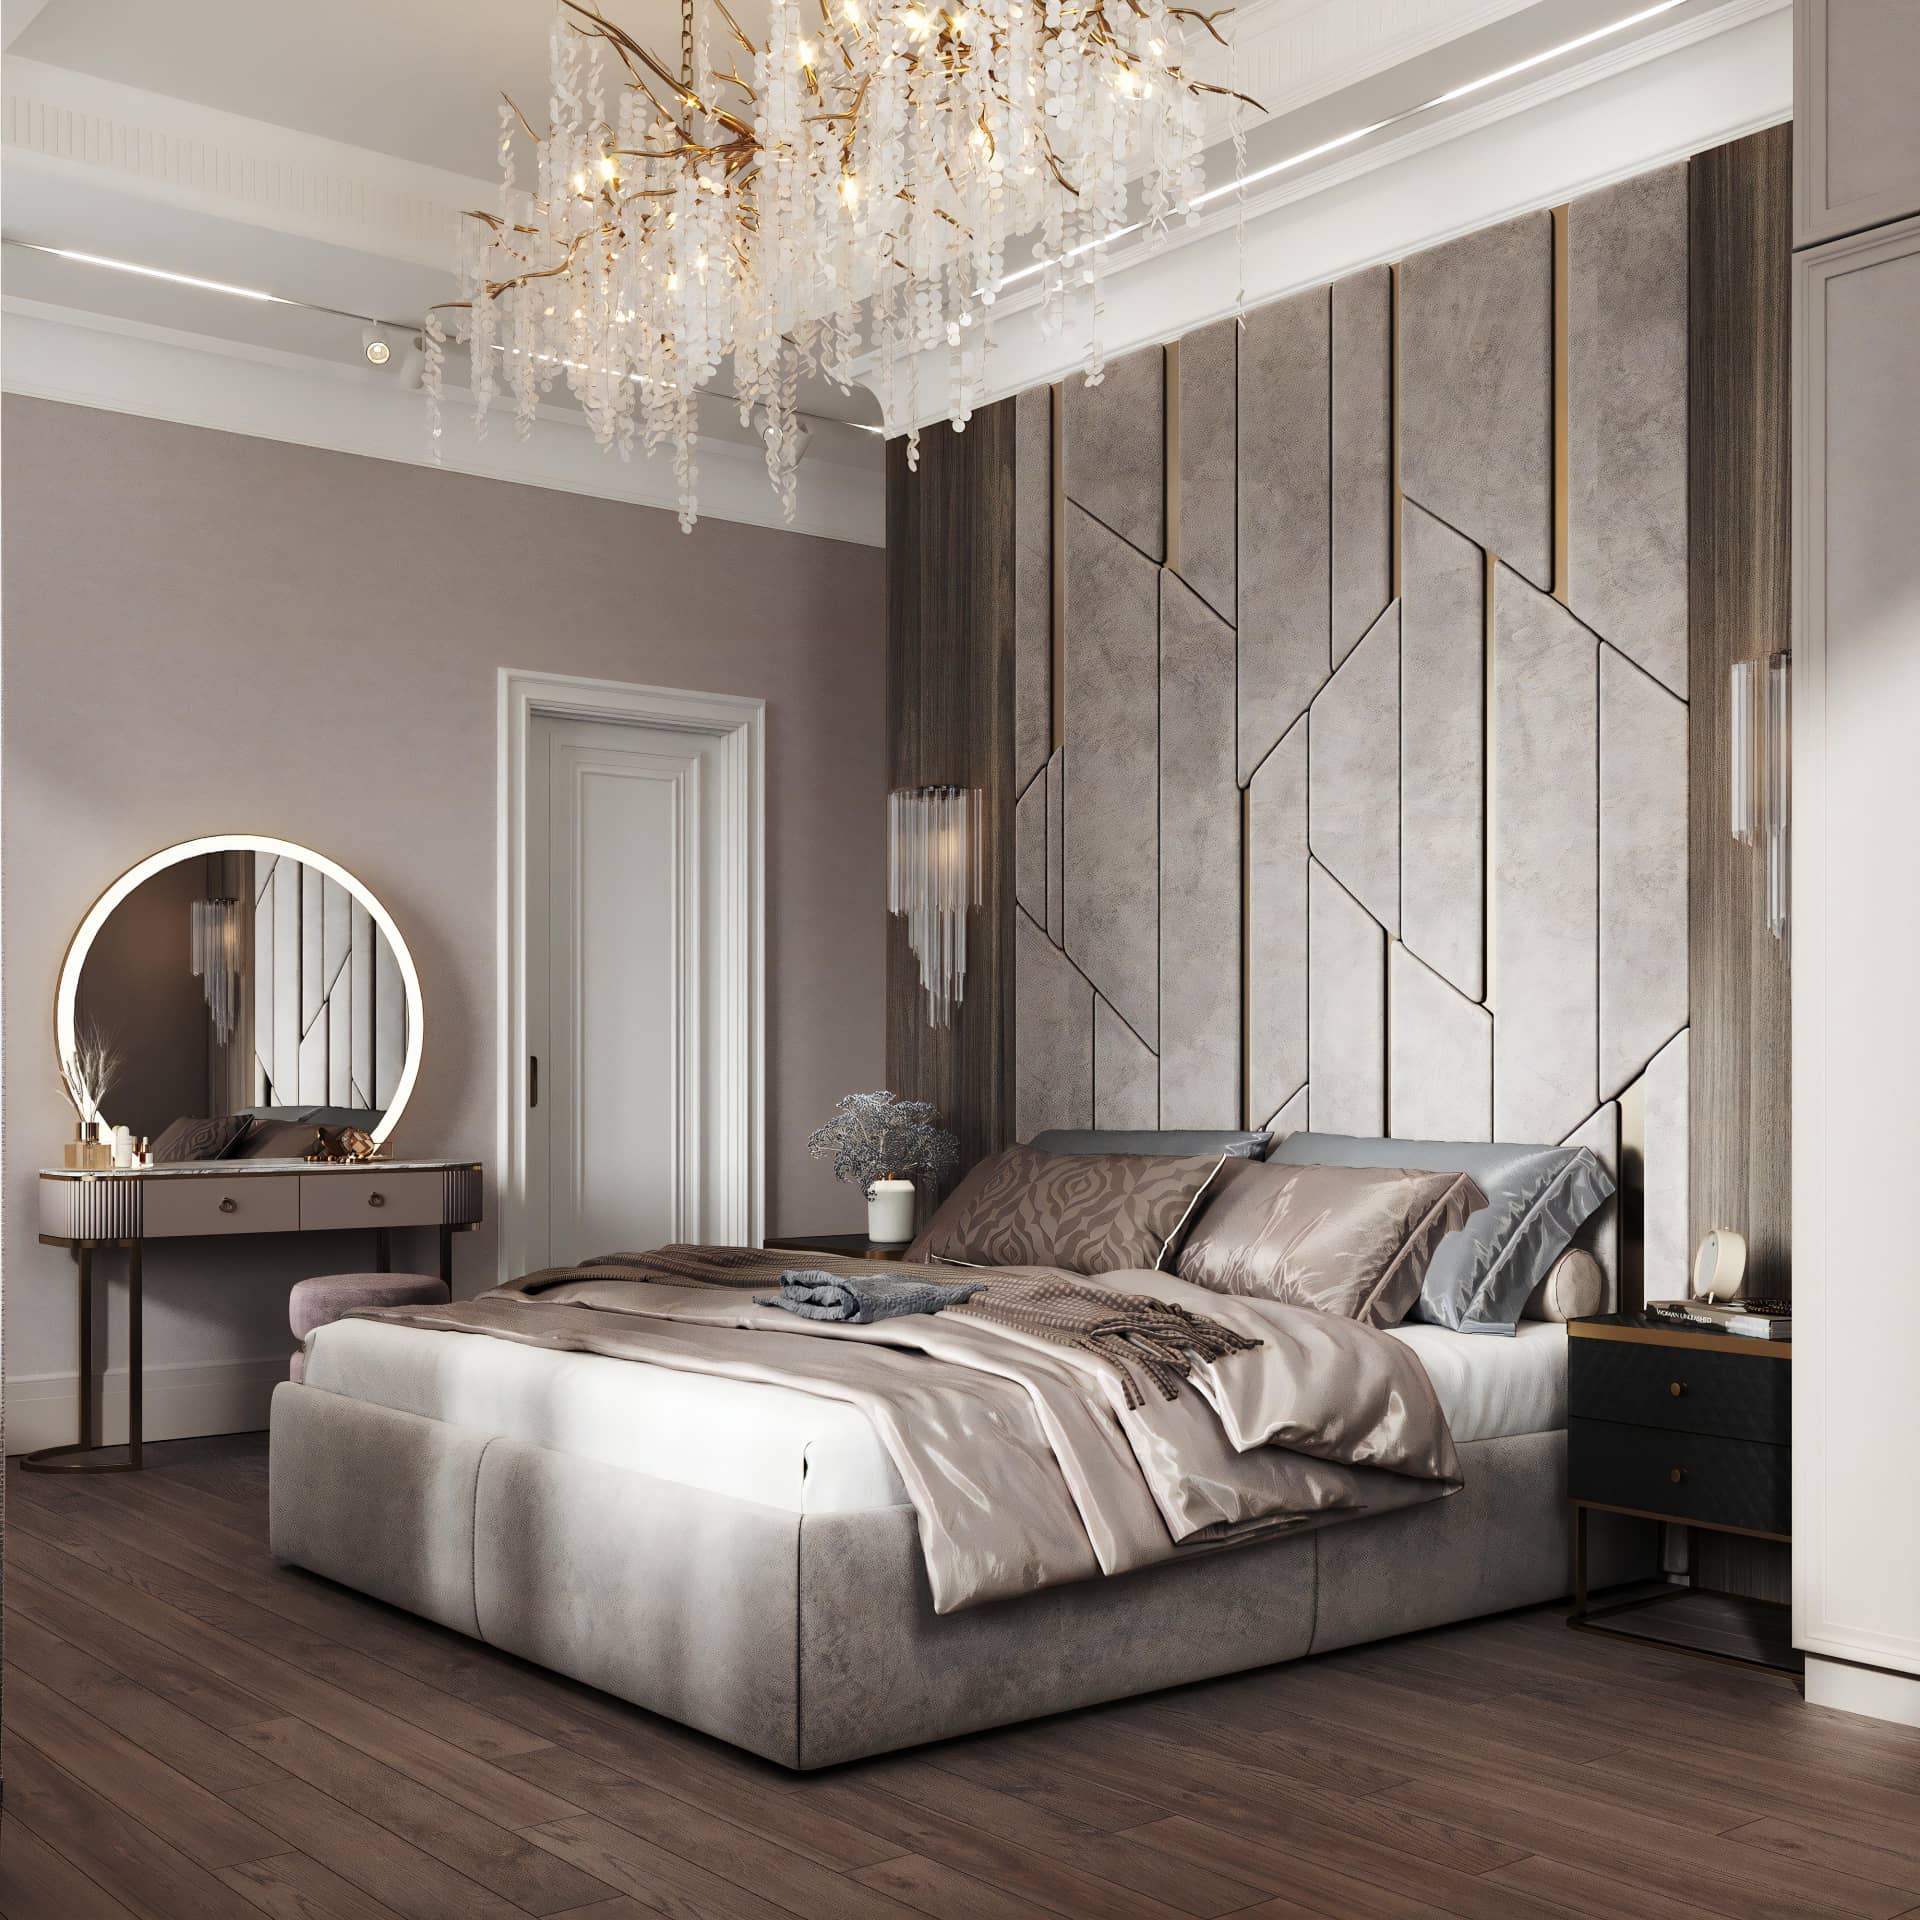 Оформление интерьера спальни в стиле современной классики. Фото № 71422.